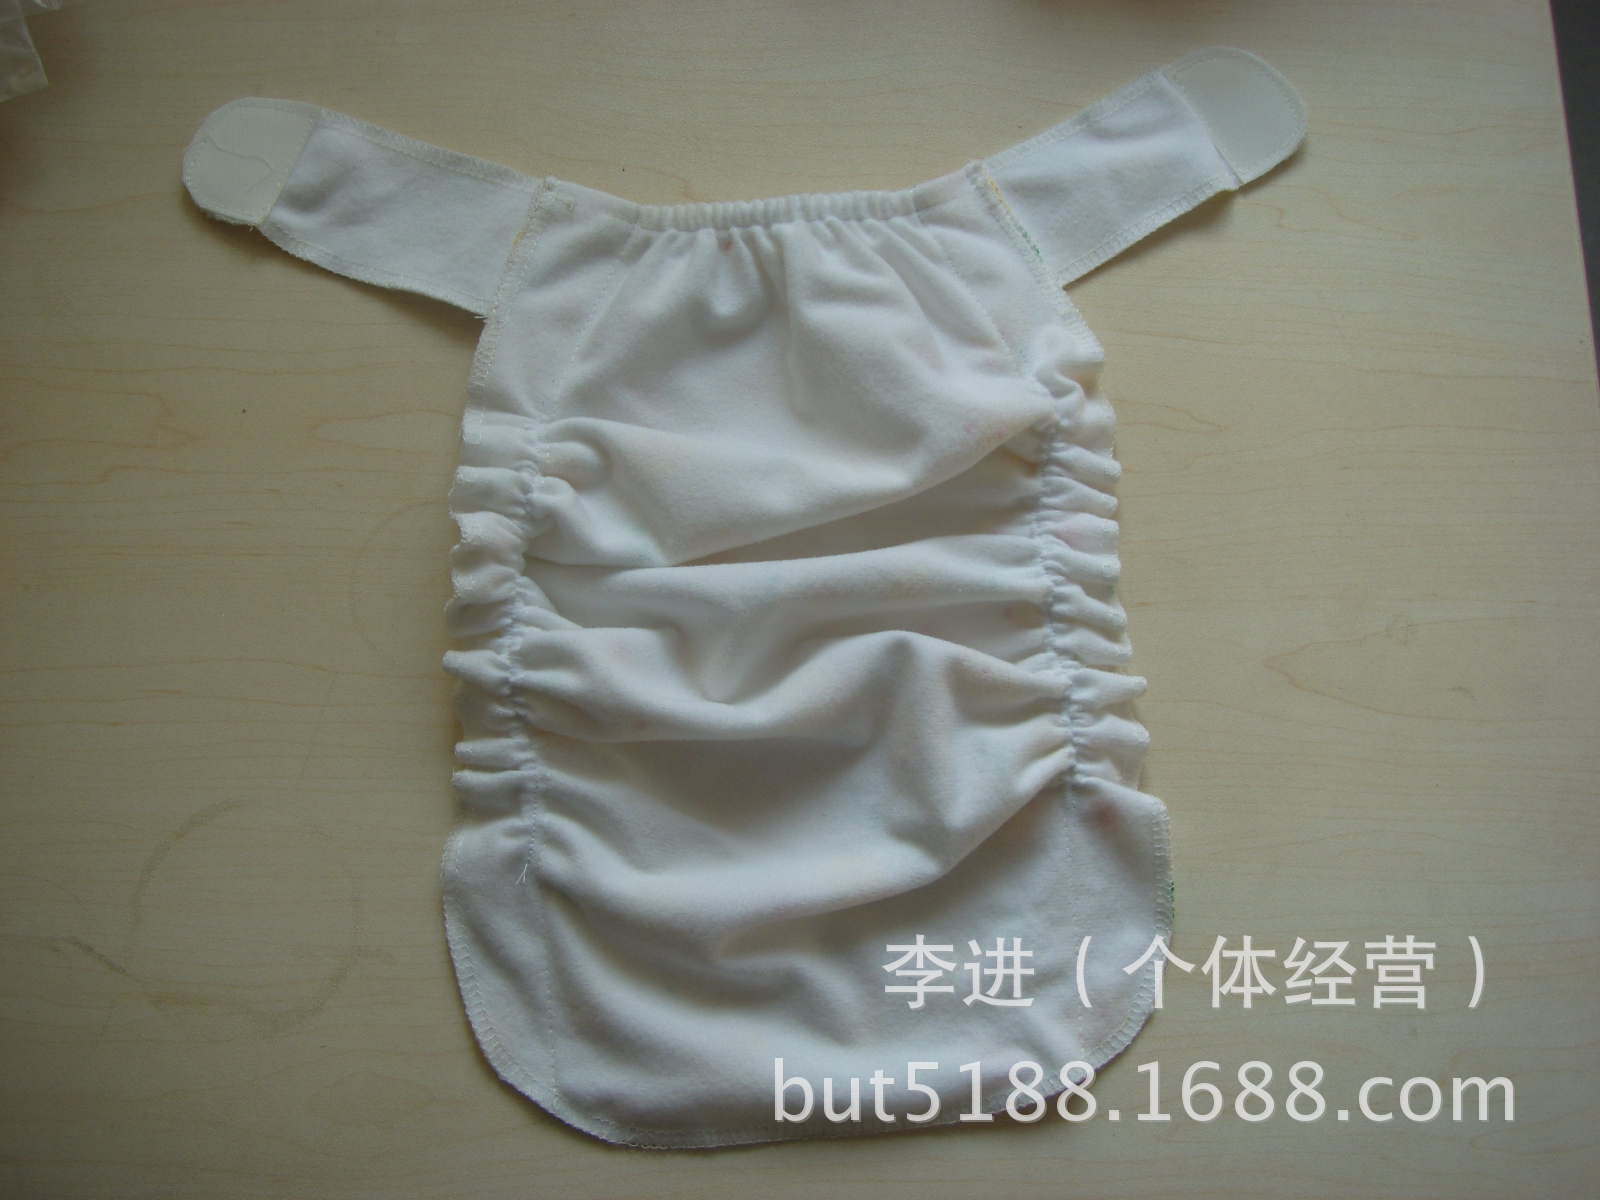 隔尿用品-可调式婴儿尿布裤 可洗尿布兜 百变尺